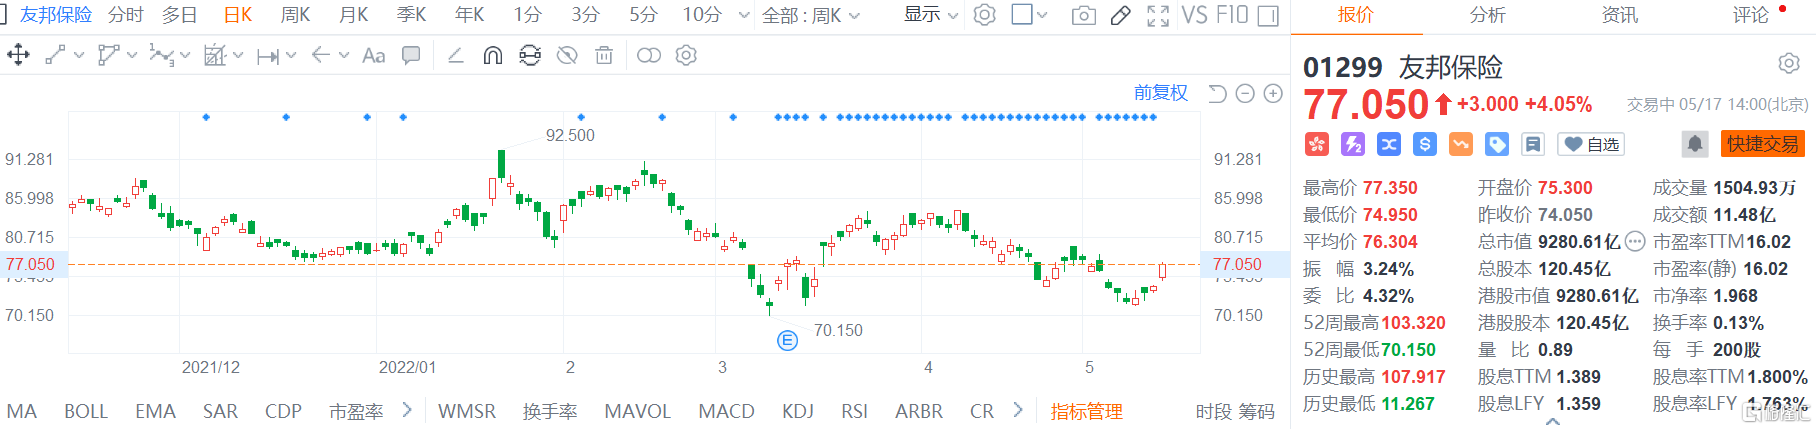 友邦保险(1299.HK)股价持续拉升 亚辉龙(688575.SH)跌幅扩大至超9%